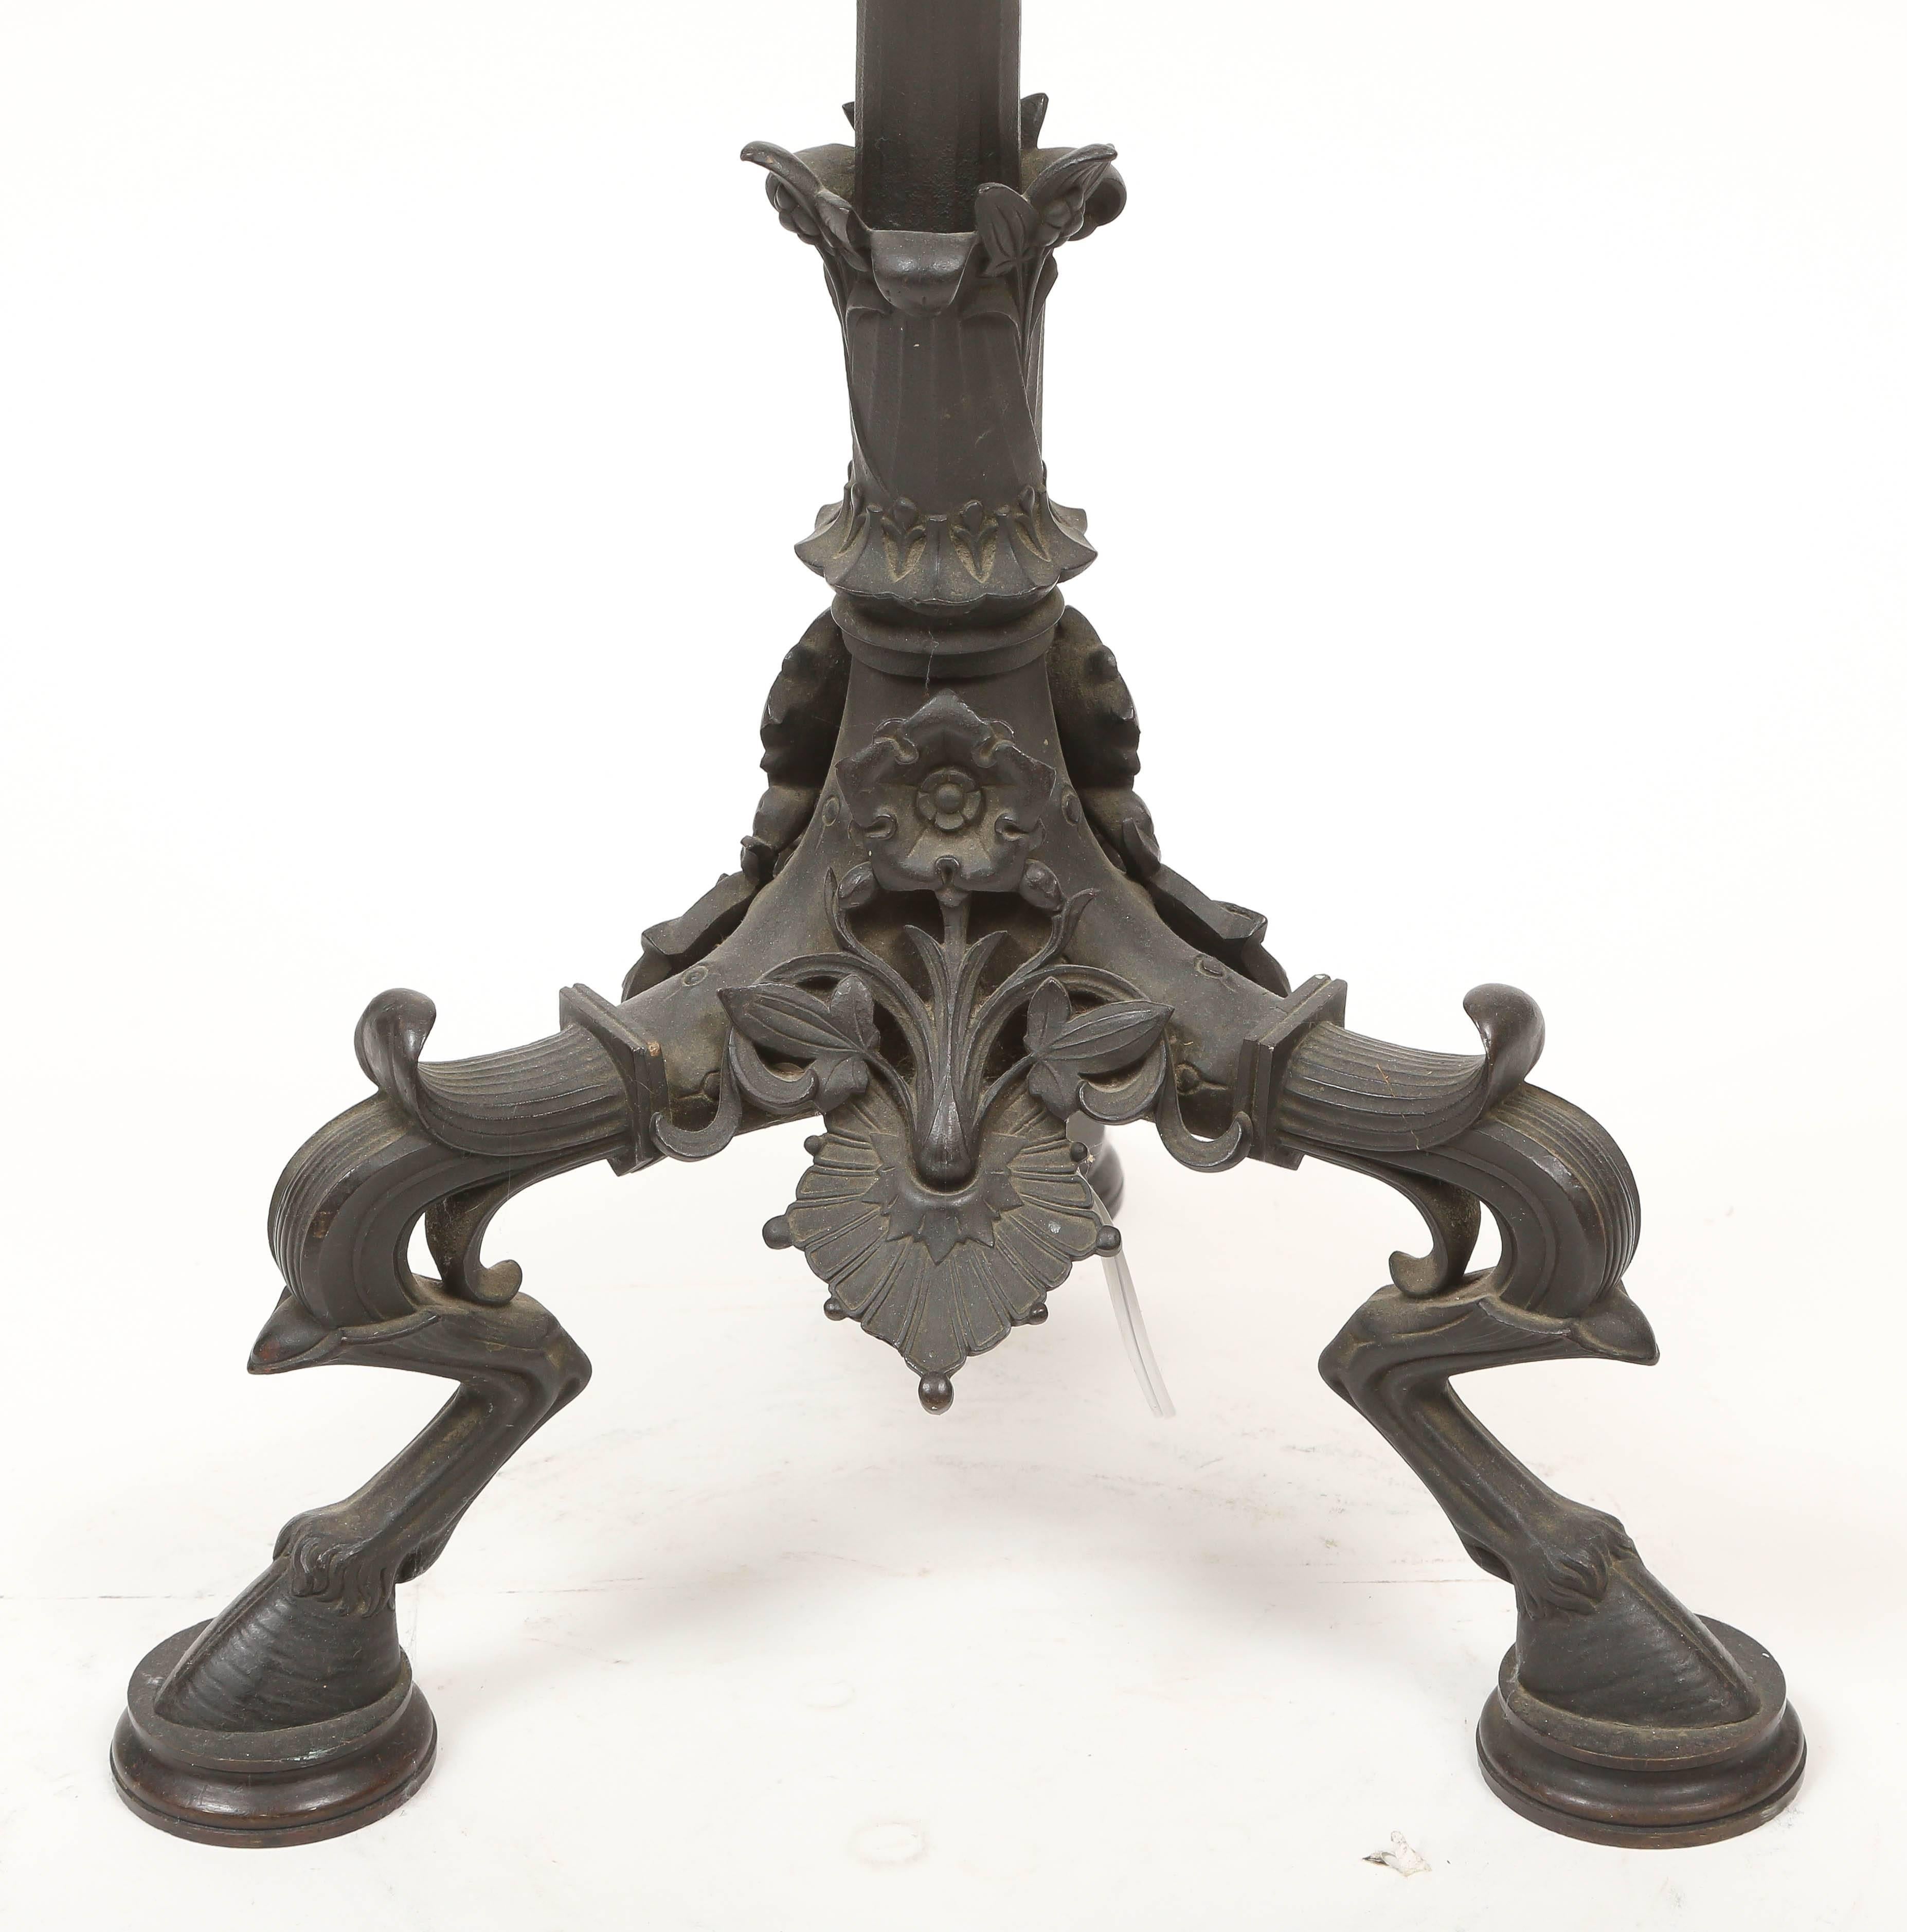 Rare lampadaire tripode de style pompéien attribué à la fonderie Caldwell & Company. Finition bronze patiné vert-de-gris. Électrifié avec deux prises de courant.